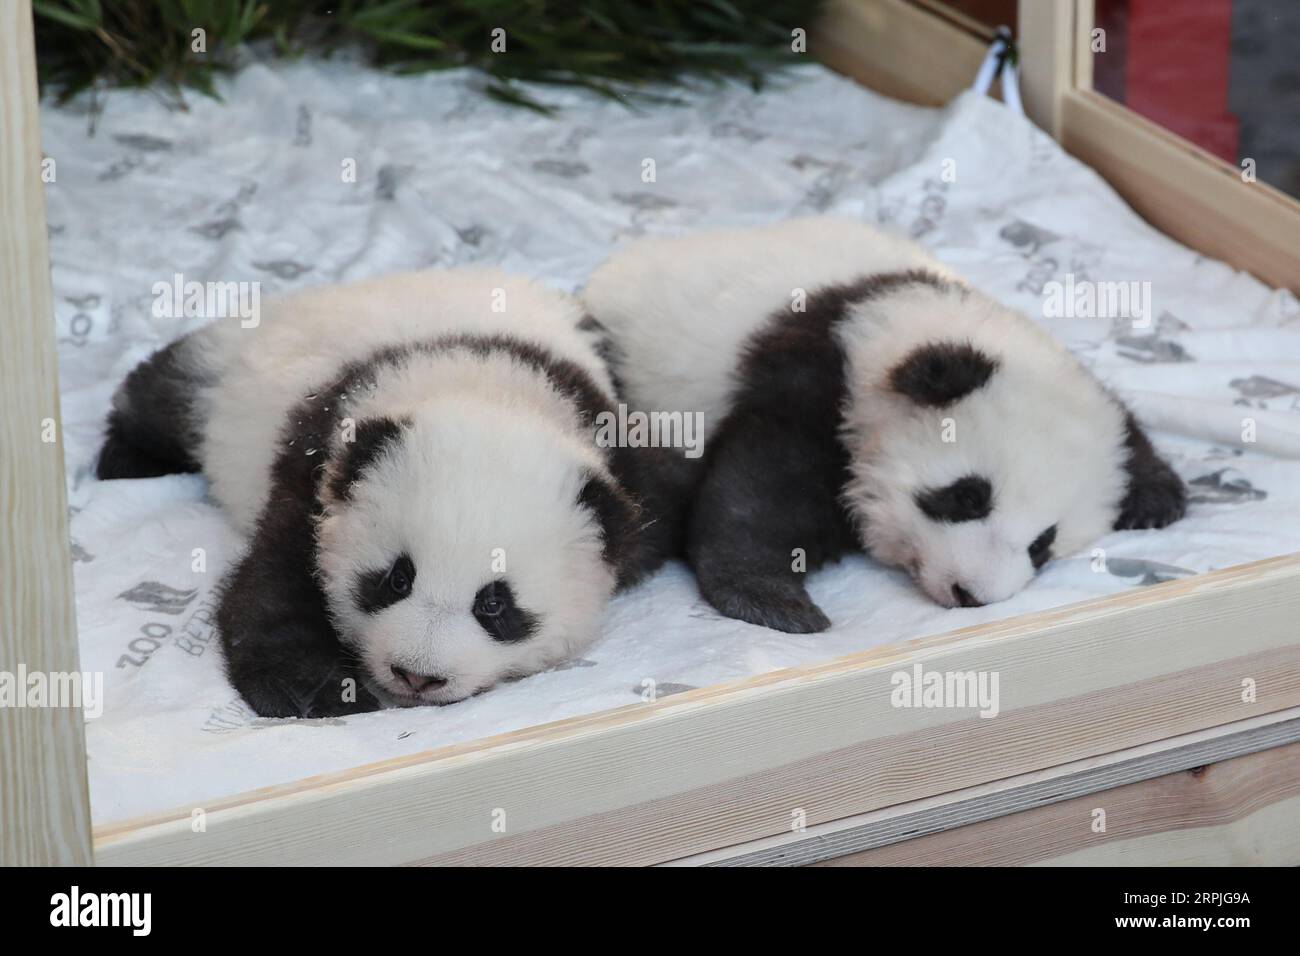 191209 -- BERLIN, 9. Dezember 2019 -- die Zwillingspandawelpen Meng Xiang R und Meng Yuan sind am 9. Dezember 2019 im Zoo Berlin zu sehen. Die Zwillingspandajungen, die im Zoo Berlin geboren wurden, die ersten Pandajungen, die in der Stadt geboren wurden, erhielten am Montag, 100 Tage nach ihrer Geburt, Namen. Bei einer Pressekonferenz im Zoo, bei der die beiden Jungen die Presse trafen, wurden die Zwillinge Meng Xiang , Meng Yuan genannt, beide zusammen, was bedeutet, dass schöne Träume wahr werden. DEUTSCHLAND-BERLIN-TWIN PANDA NEUGEBORENE-NAMEN SHANXYUQI PUBLICATIONXNOTXINXCHN Stockfoto